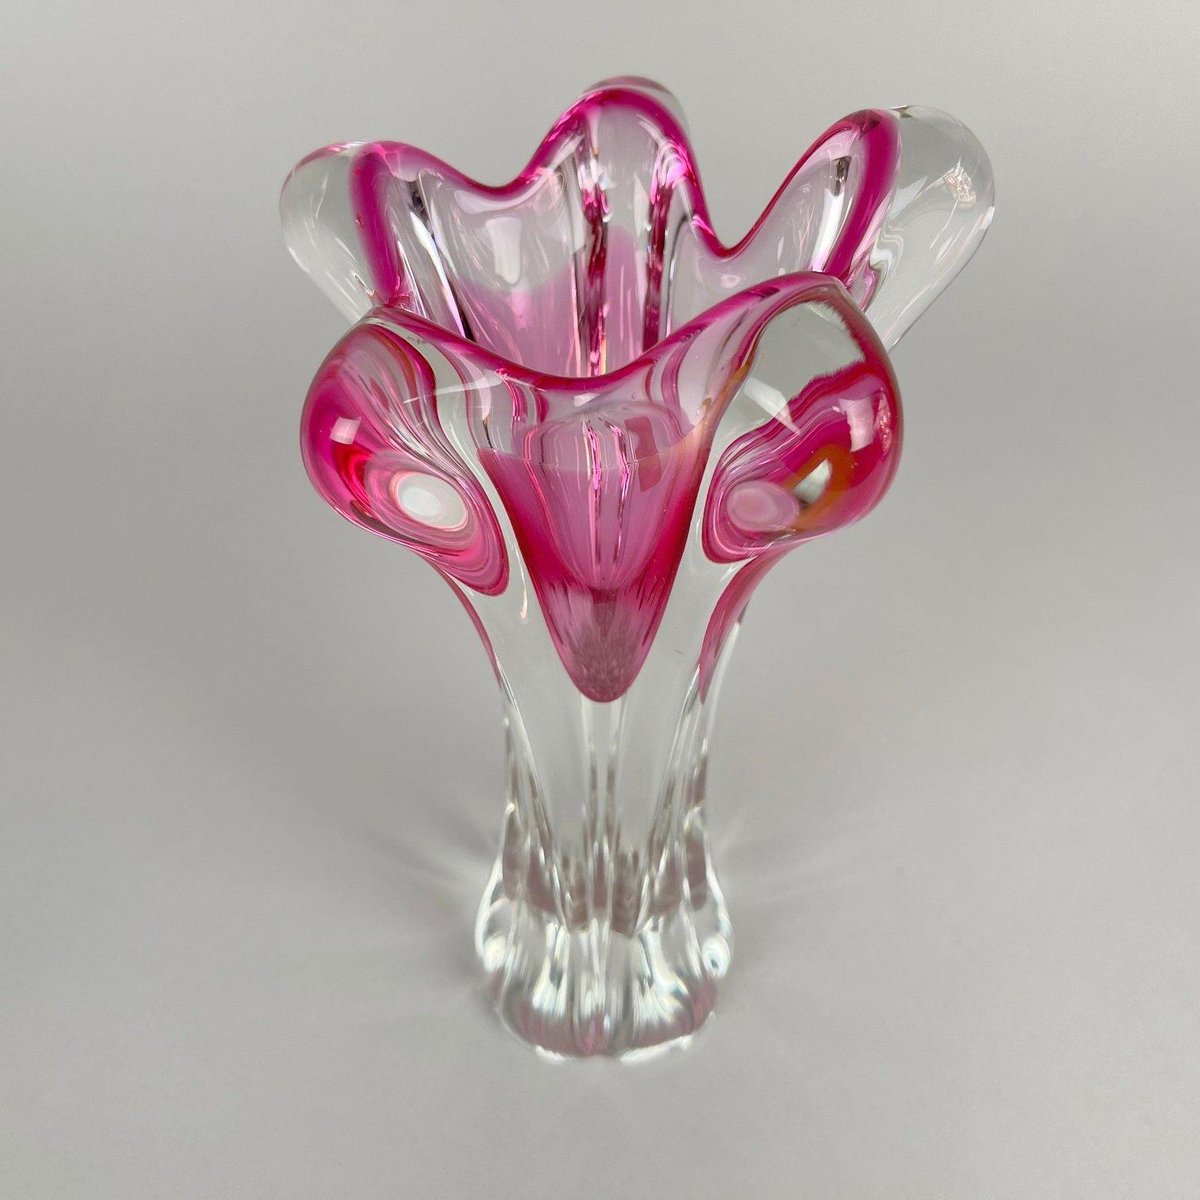 Vintage Art Glass Vase by Josef Hospodka for Chribska Glass Work, 1960s ...